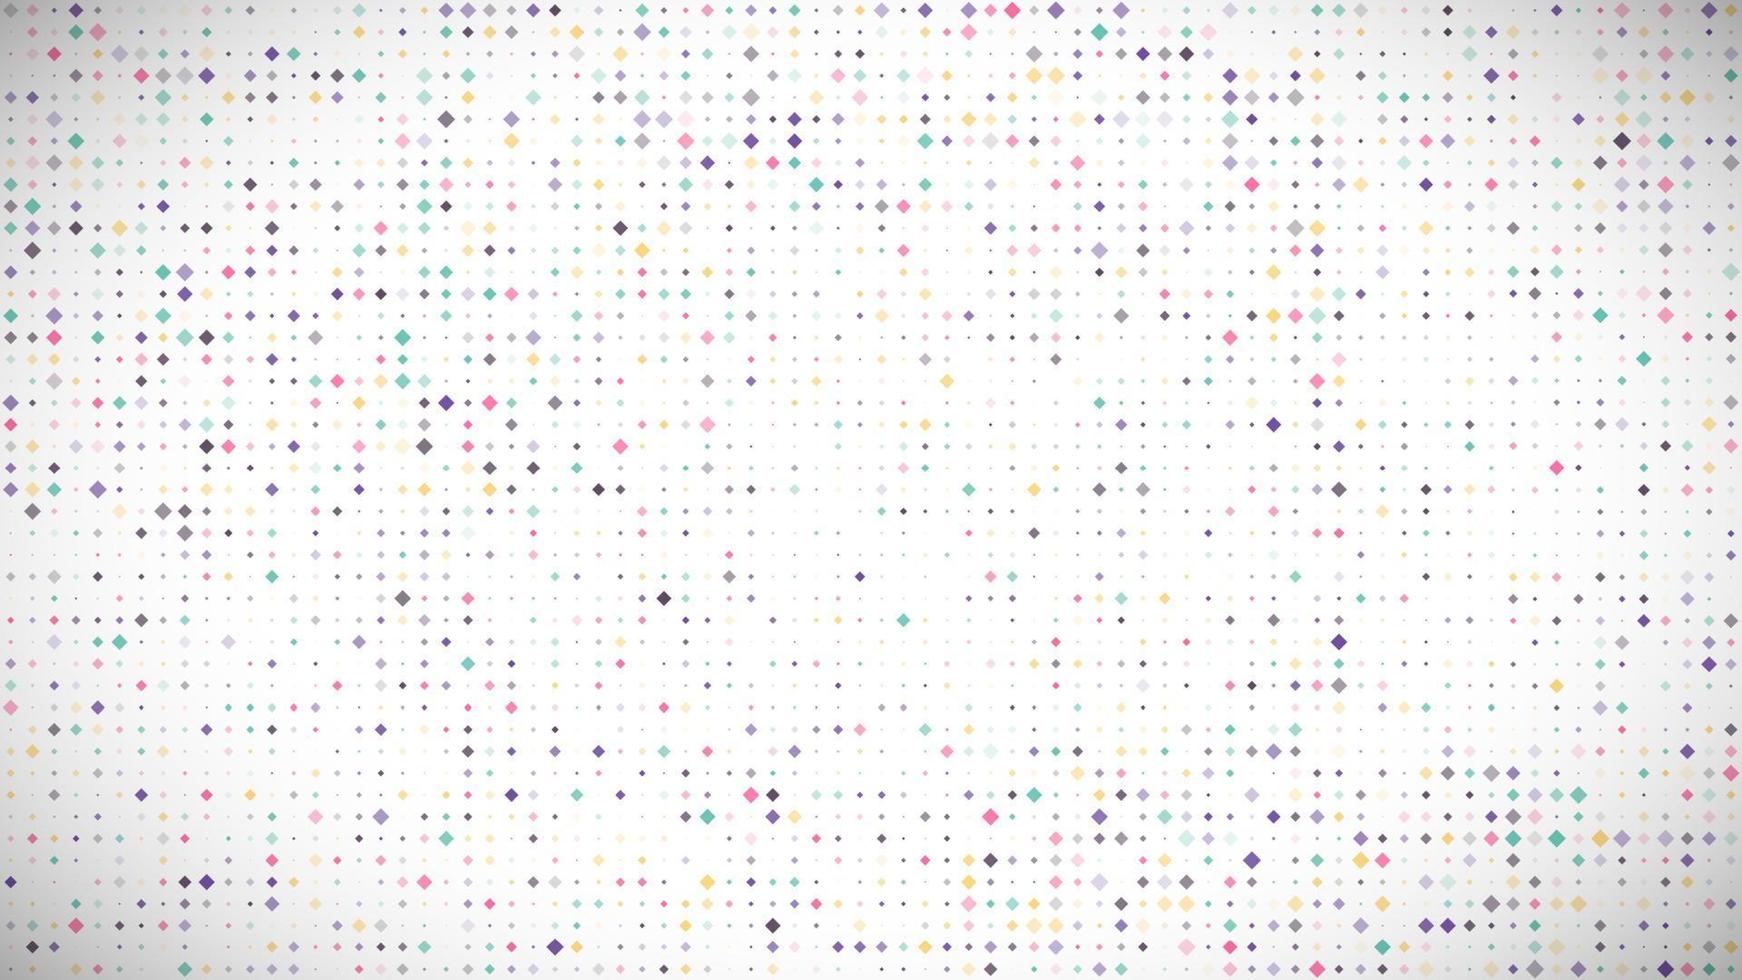 fundo geométrico abstrato de quadrados. fundo de pixel multicolorido com espaço vazio. ilustração vetorial. vetor